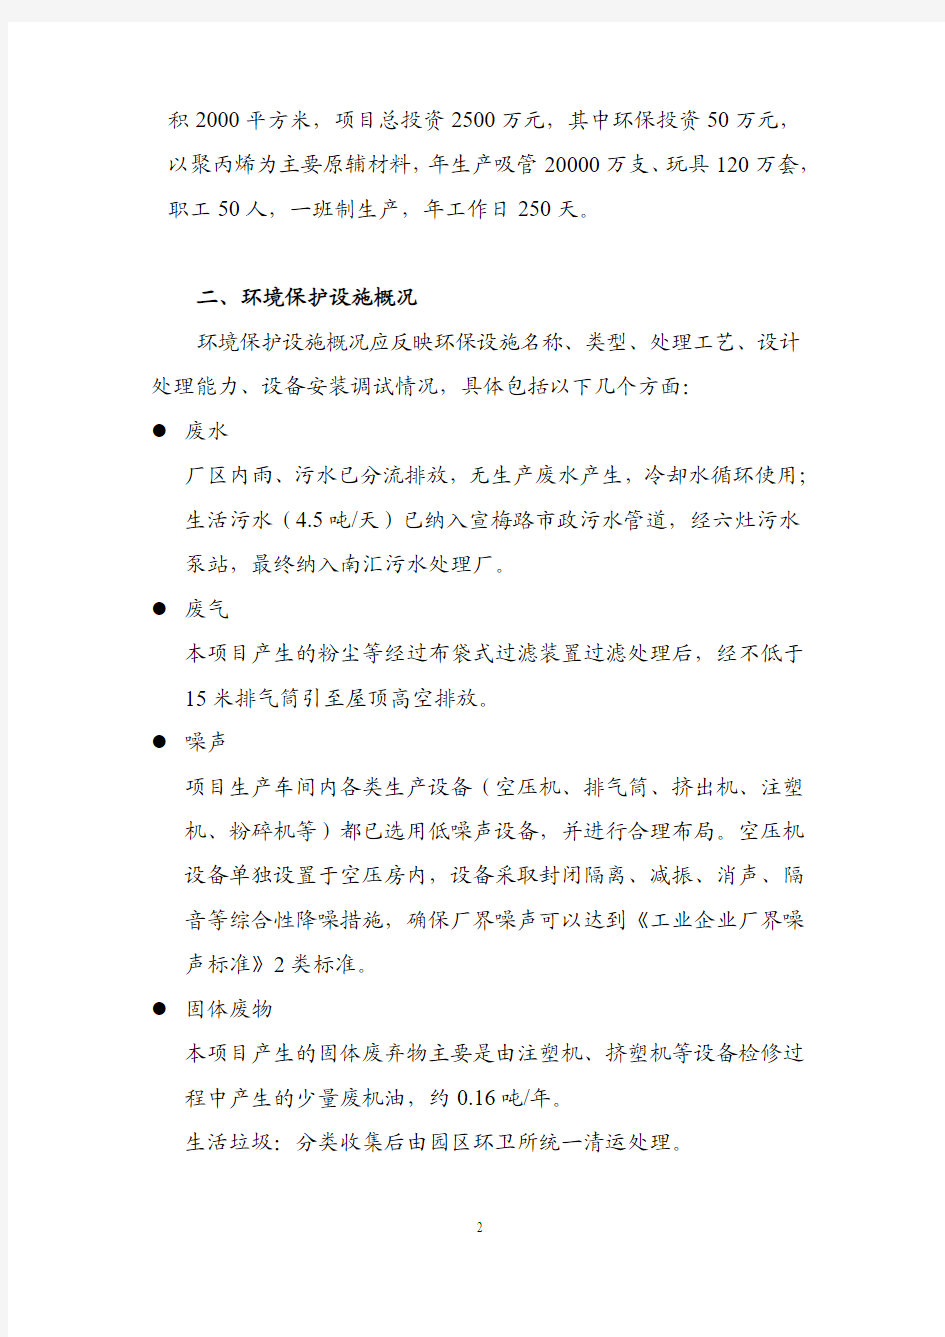 上海昌联塑料制品有限公司环保措施落实情况报告公示